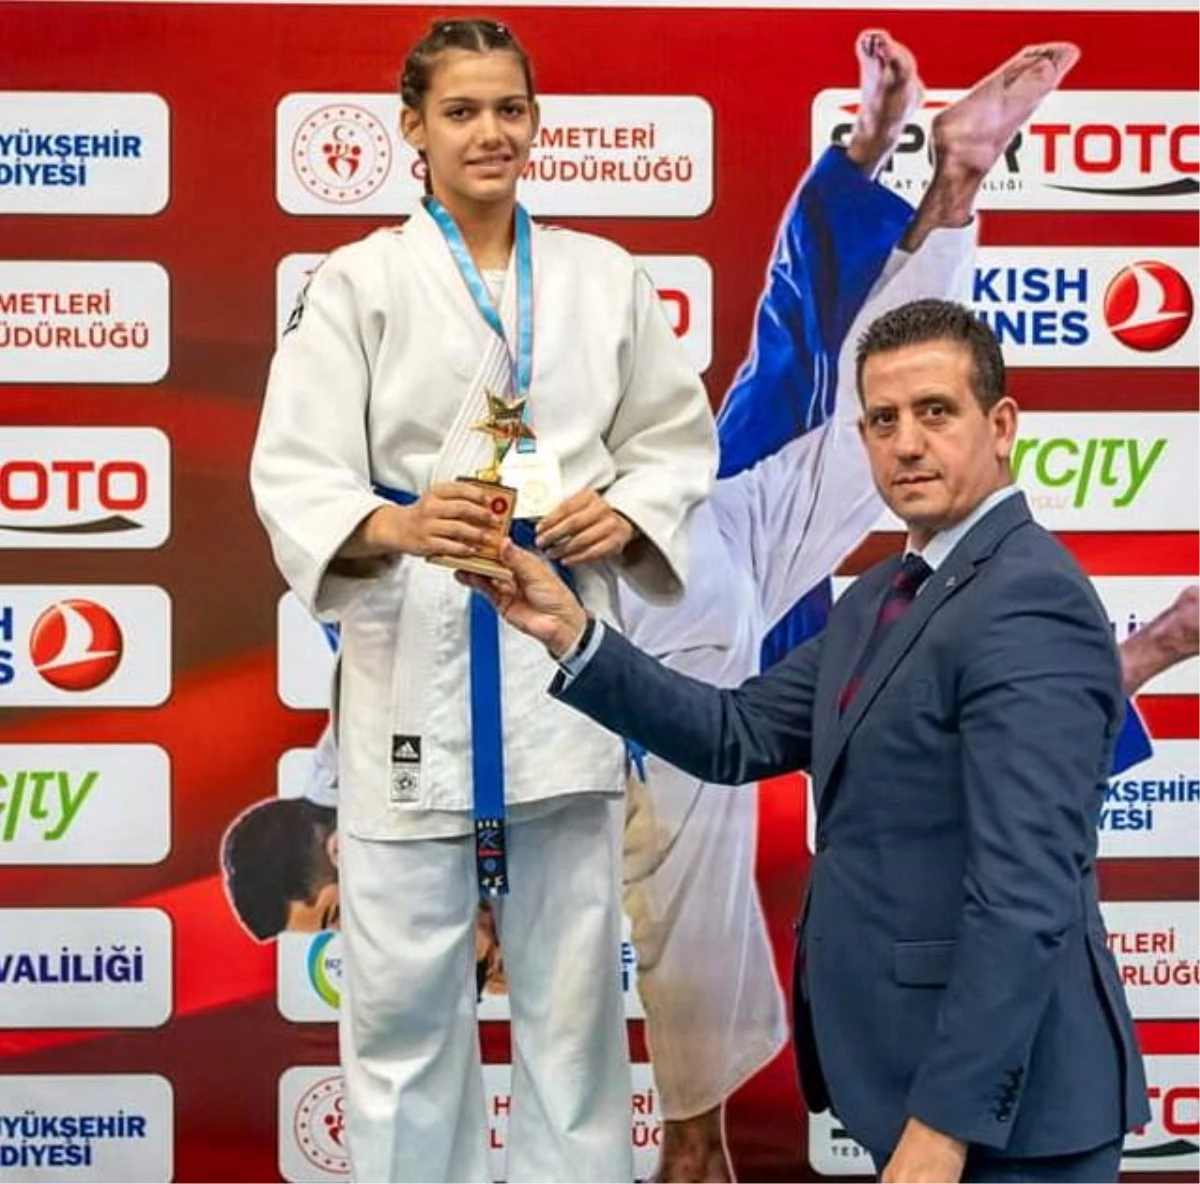 Manisalı judocu Hira Kılkış Türkiye Şampiyonu